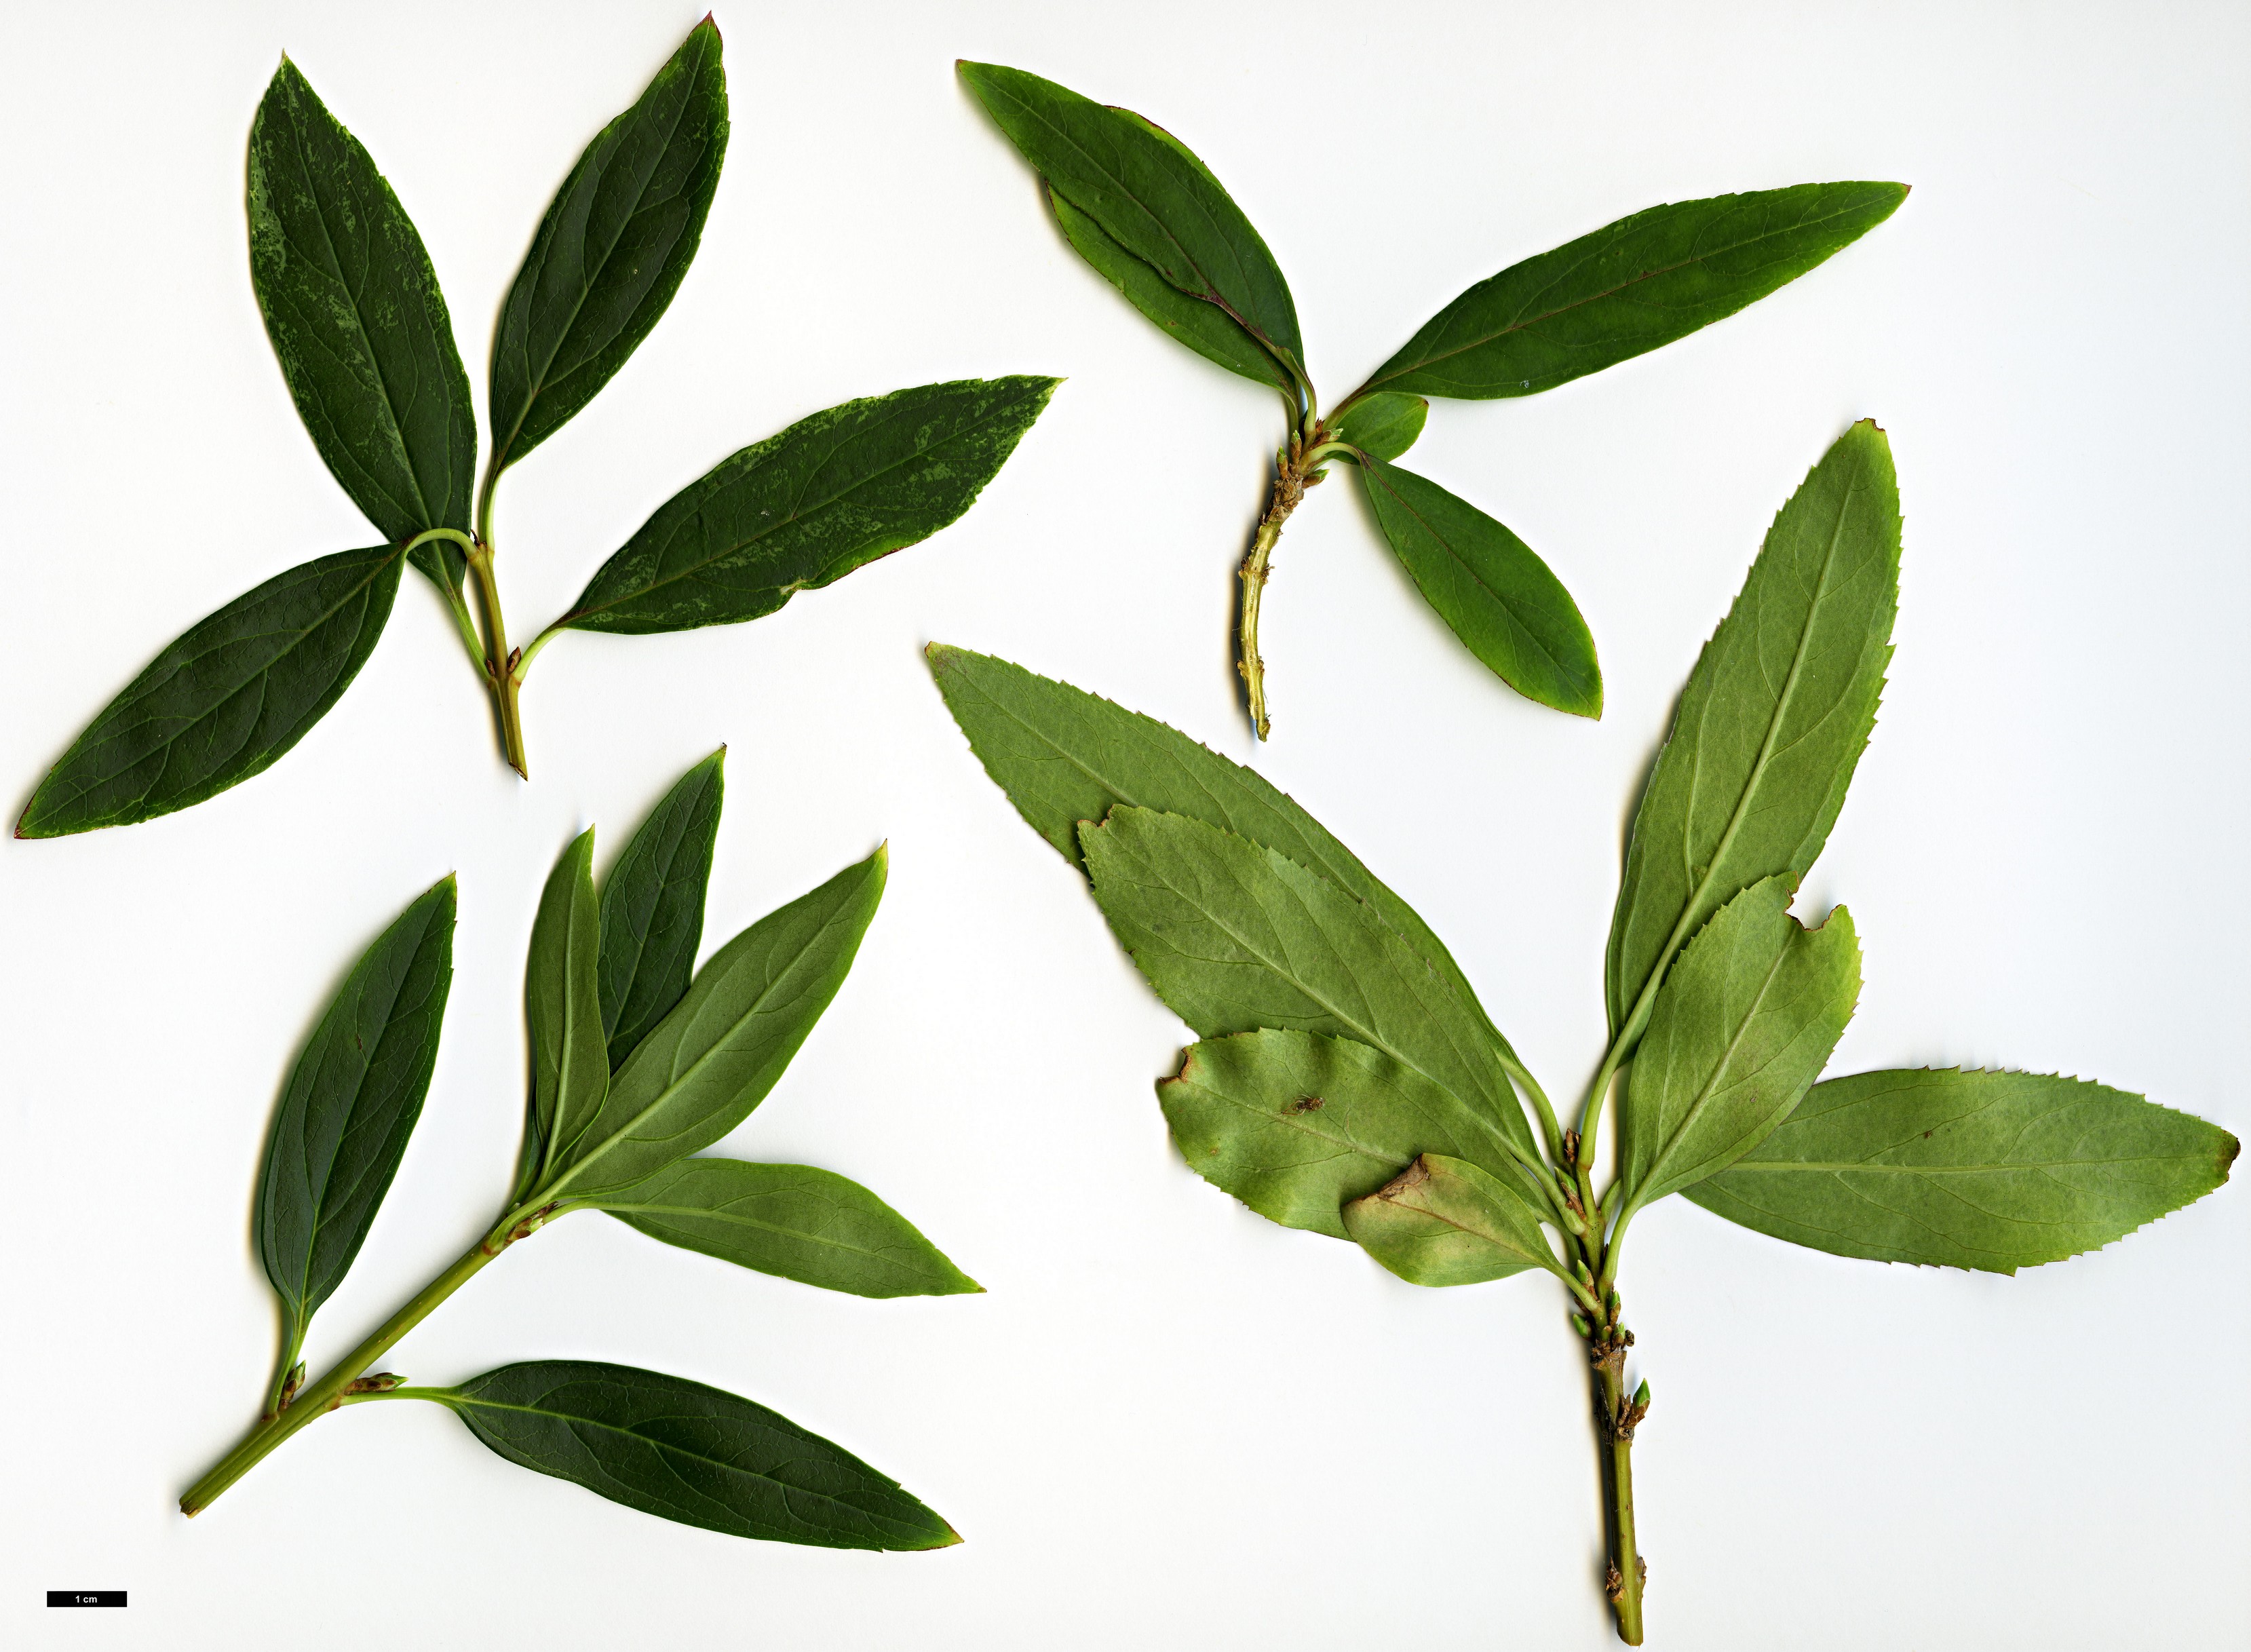 High resolution image: Family: Oleaceae - Genus: Forsythia - Taxon: viridissima - SpeciesSub: var. koreana